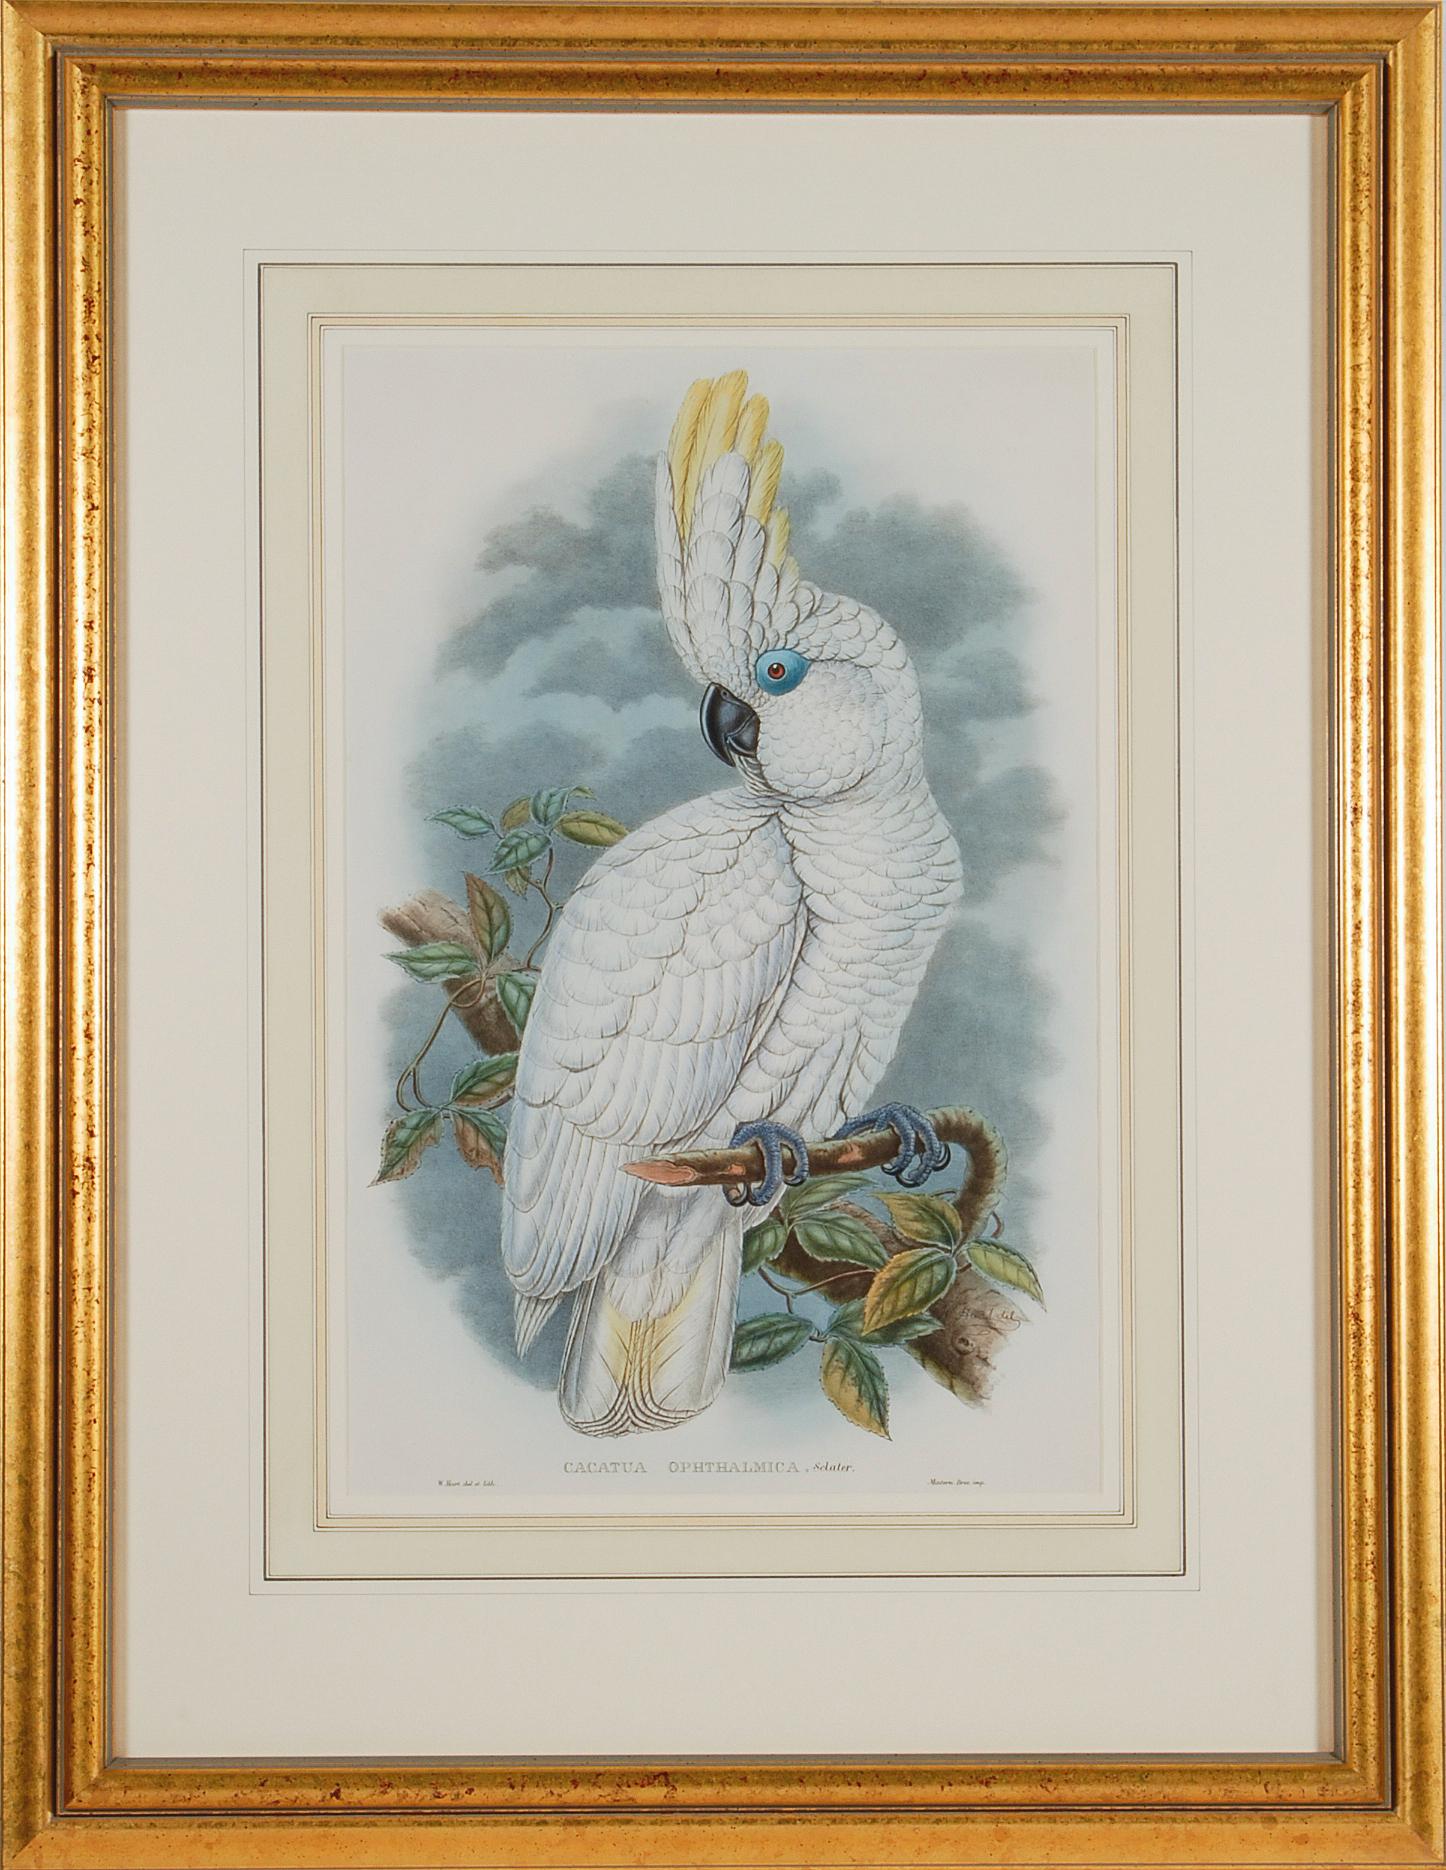 Cockatoo aux yeux bleus : Lithographie originale encadrée du 19e siècle colorée à la main par Gould